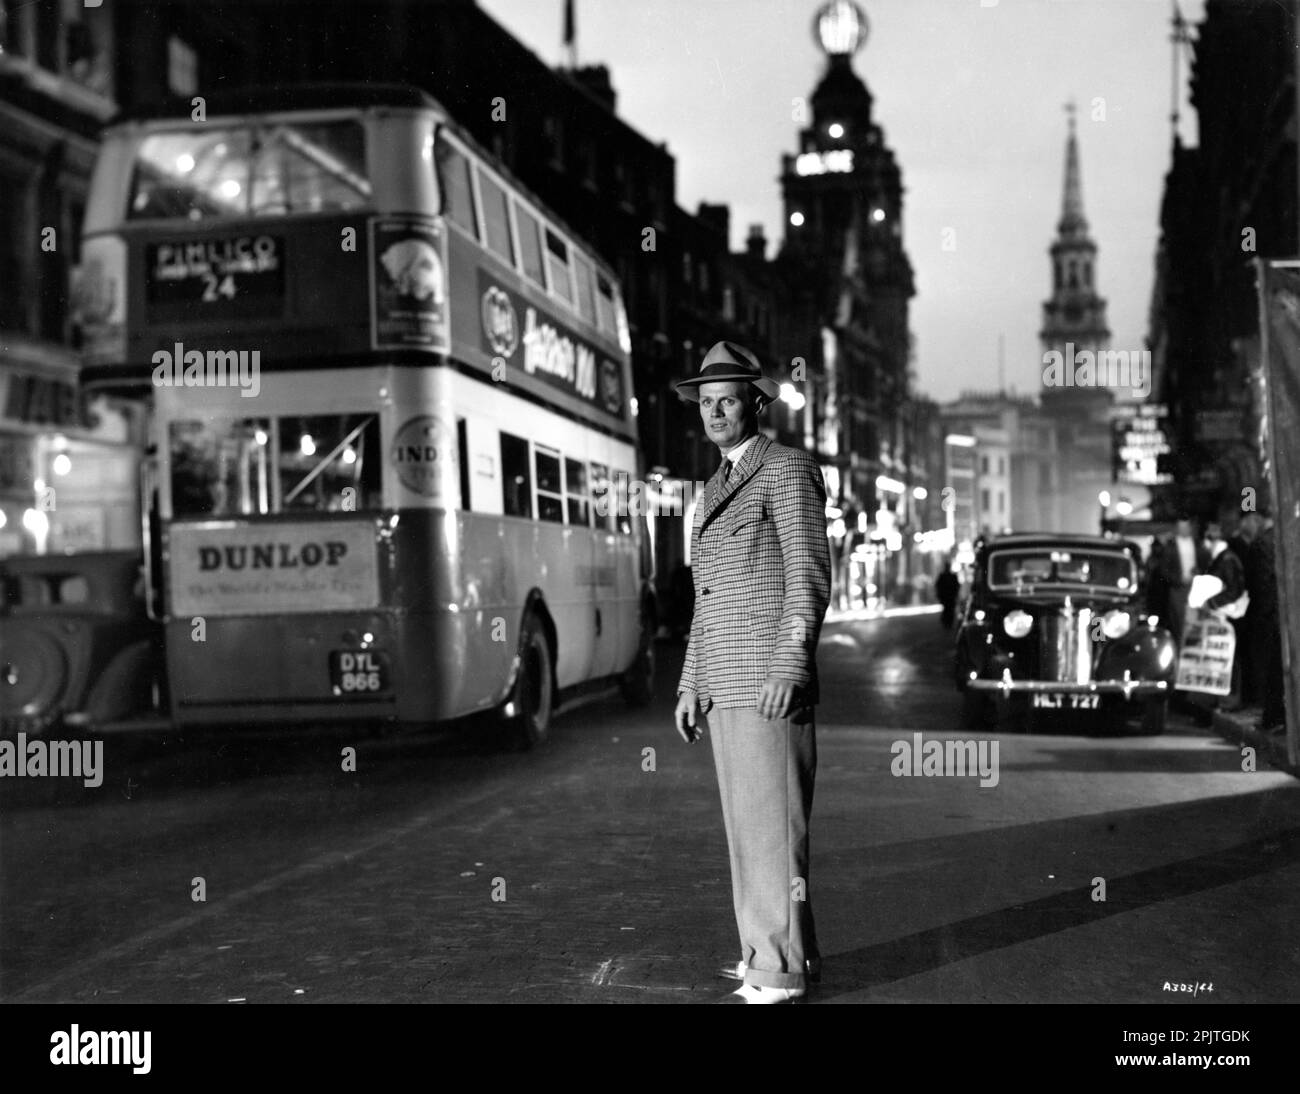 RICHARD WIDMARK steht in der Nähe des London Bus auf der St. Martin's Lane mit Coliseum Theatre und St. Martin in the Fields Church hinter ihm in DER NACHT UND DER REGISSEUR DER STADT aus dem Jahr 1950 JULES DASSIN Roman Gerald Kersh Twentieth Century Fox Stockfoto